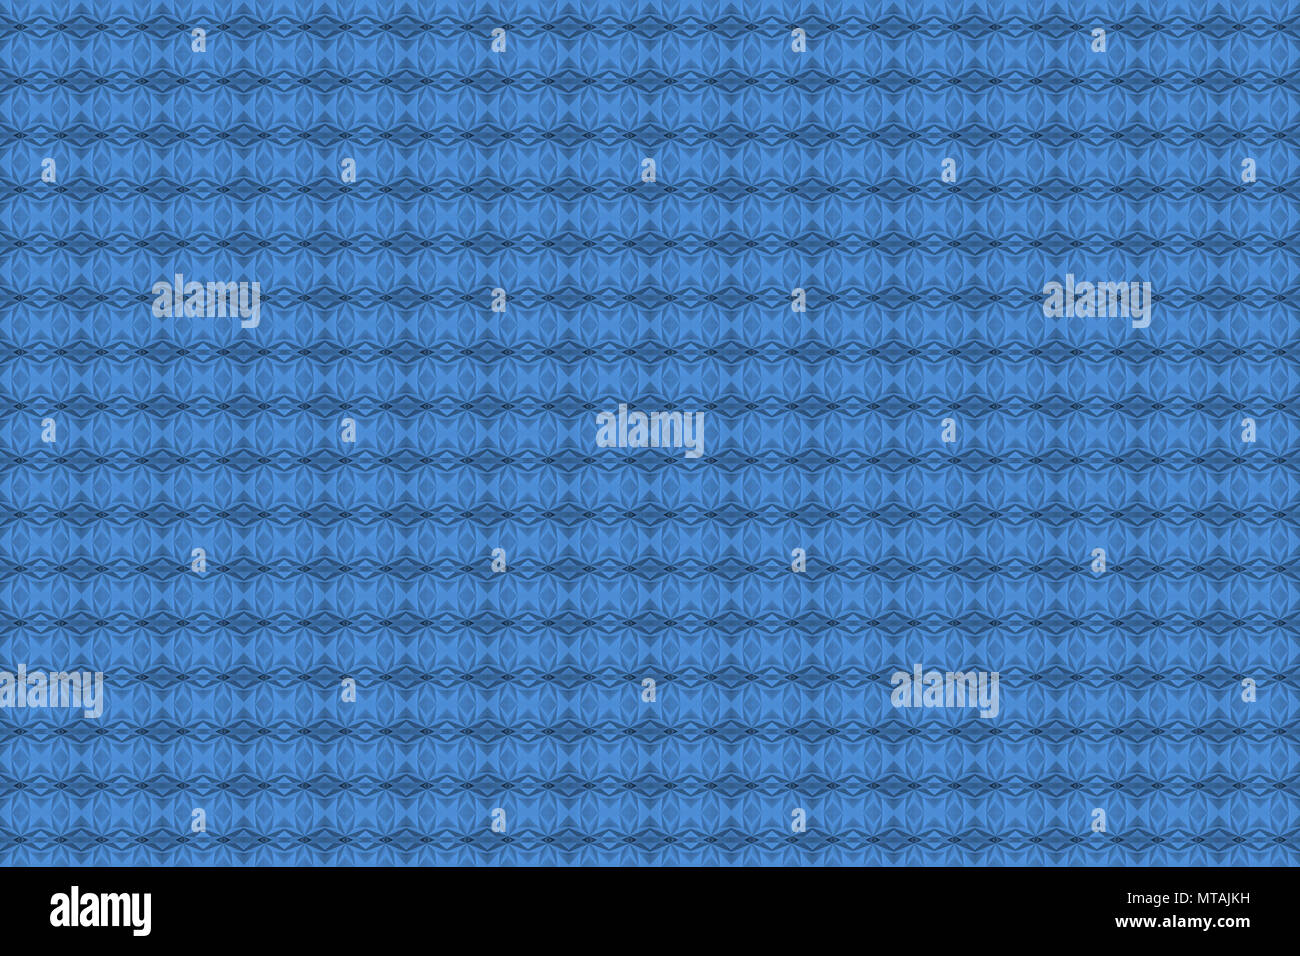 Blau, Pantone 16-4132 Little Boy Blue, Fliesen Hintergrund abstraktes Muster. Nahtlose monochromen Graphic Design Pattern. Stockfoto